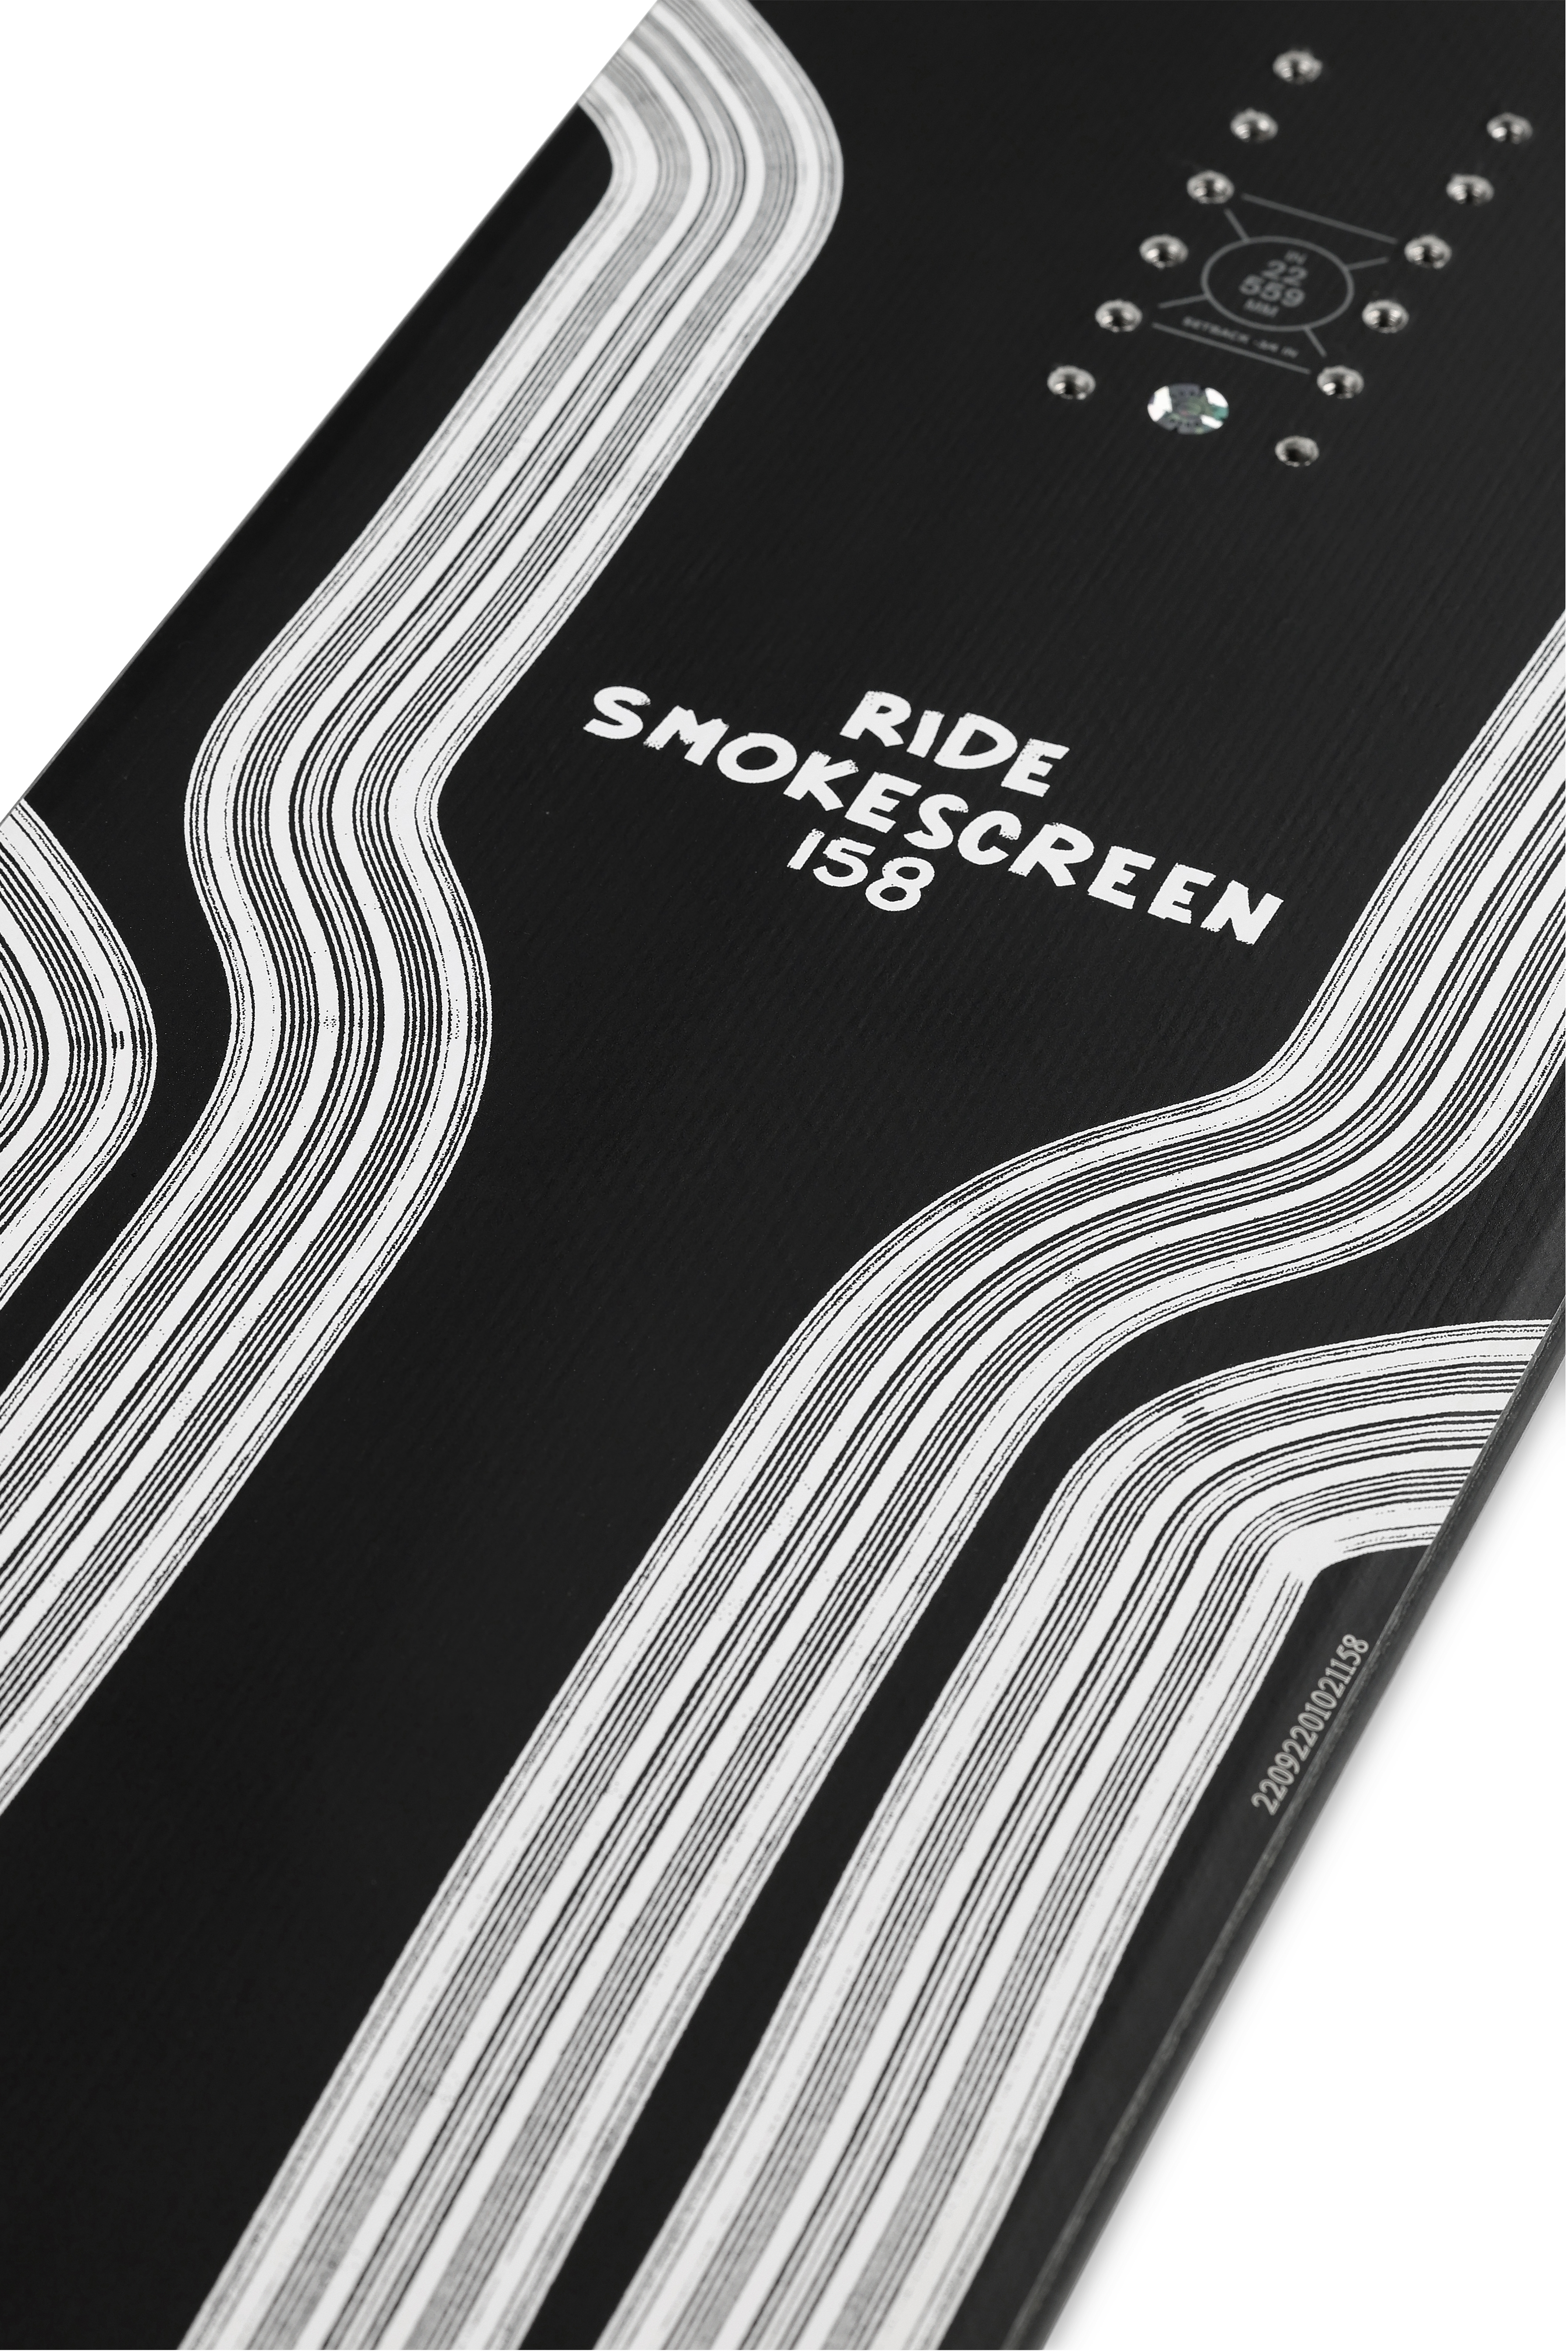 Ride Smokescreen